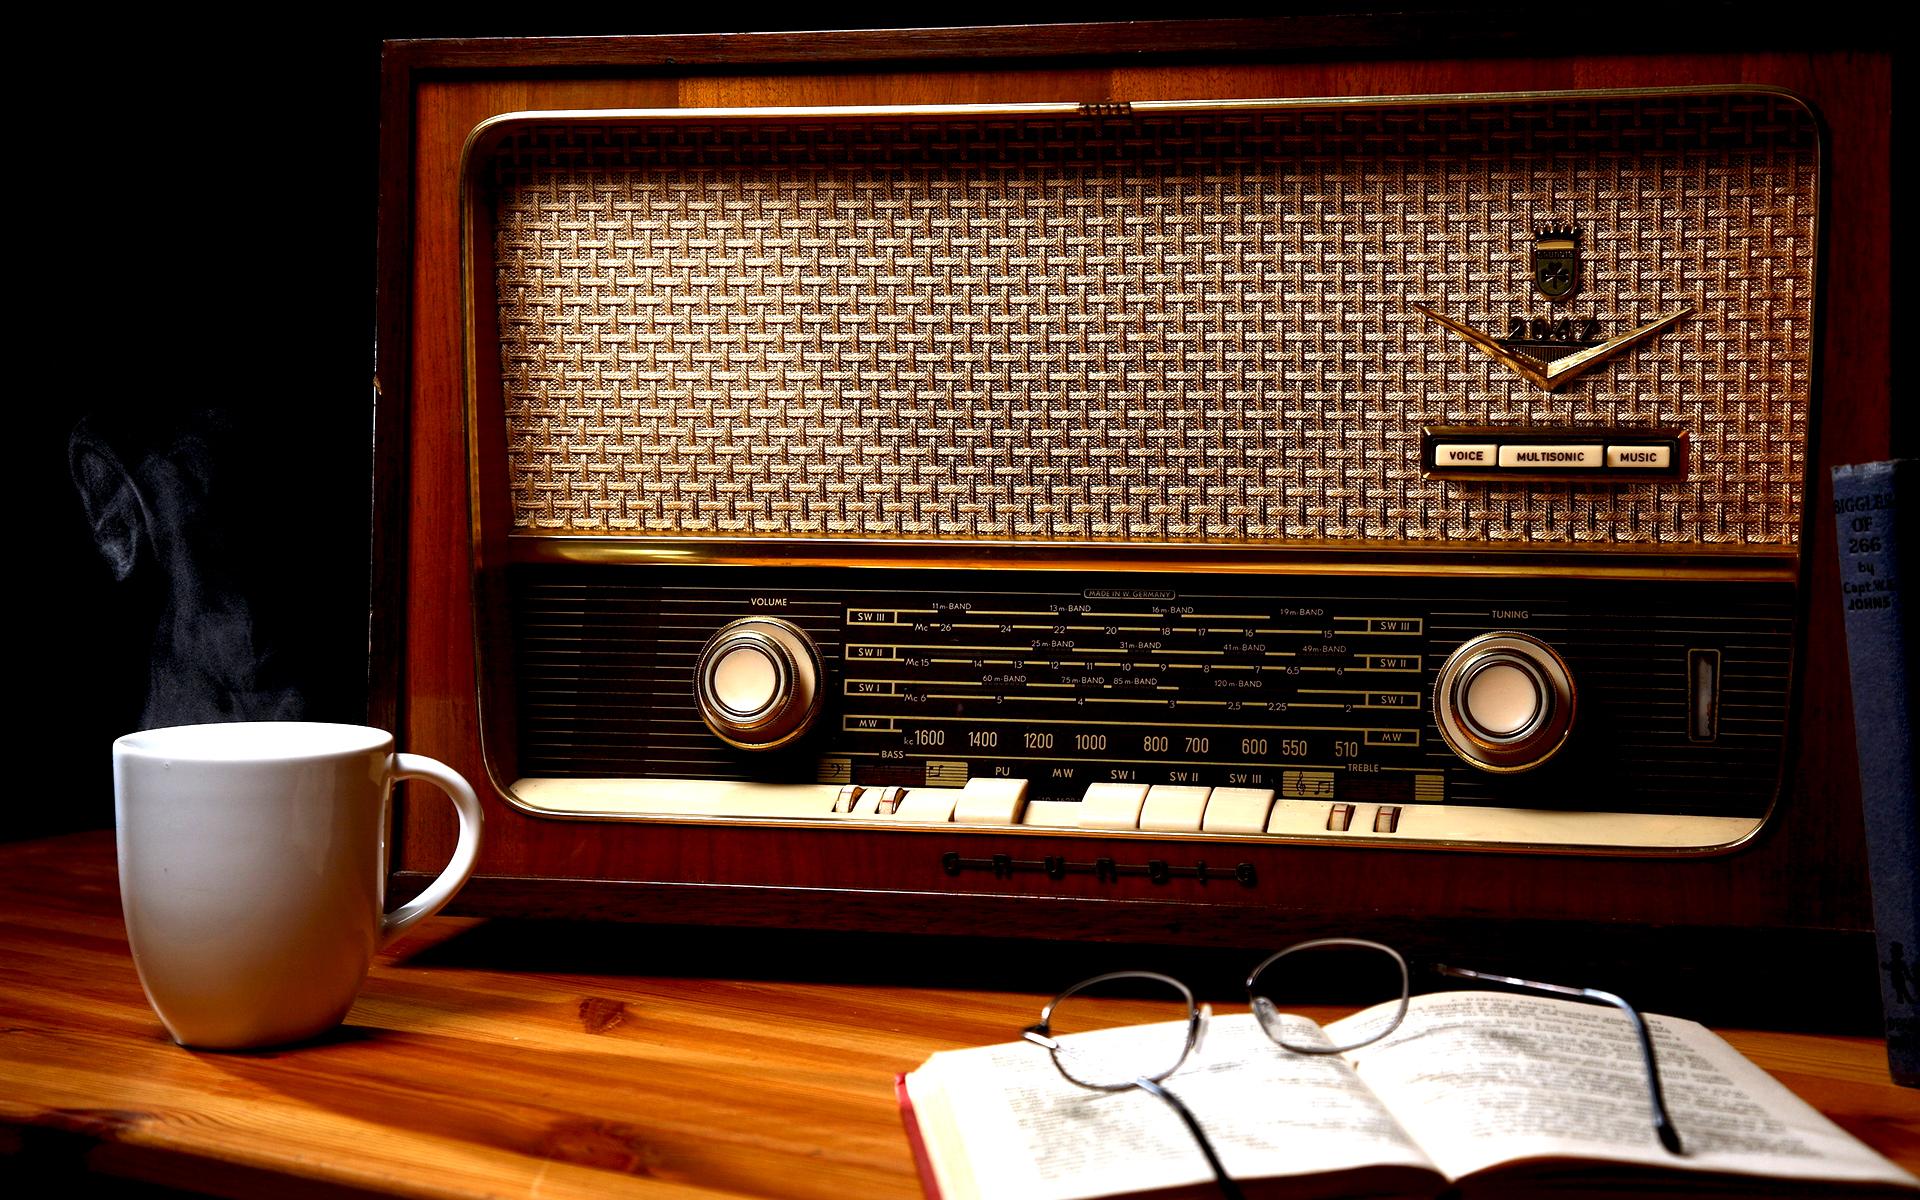 رادیو را بیشتر بشناسیم/ برنامه های رادیو برای روز تاسیس رادیو